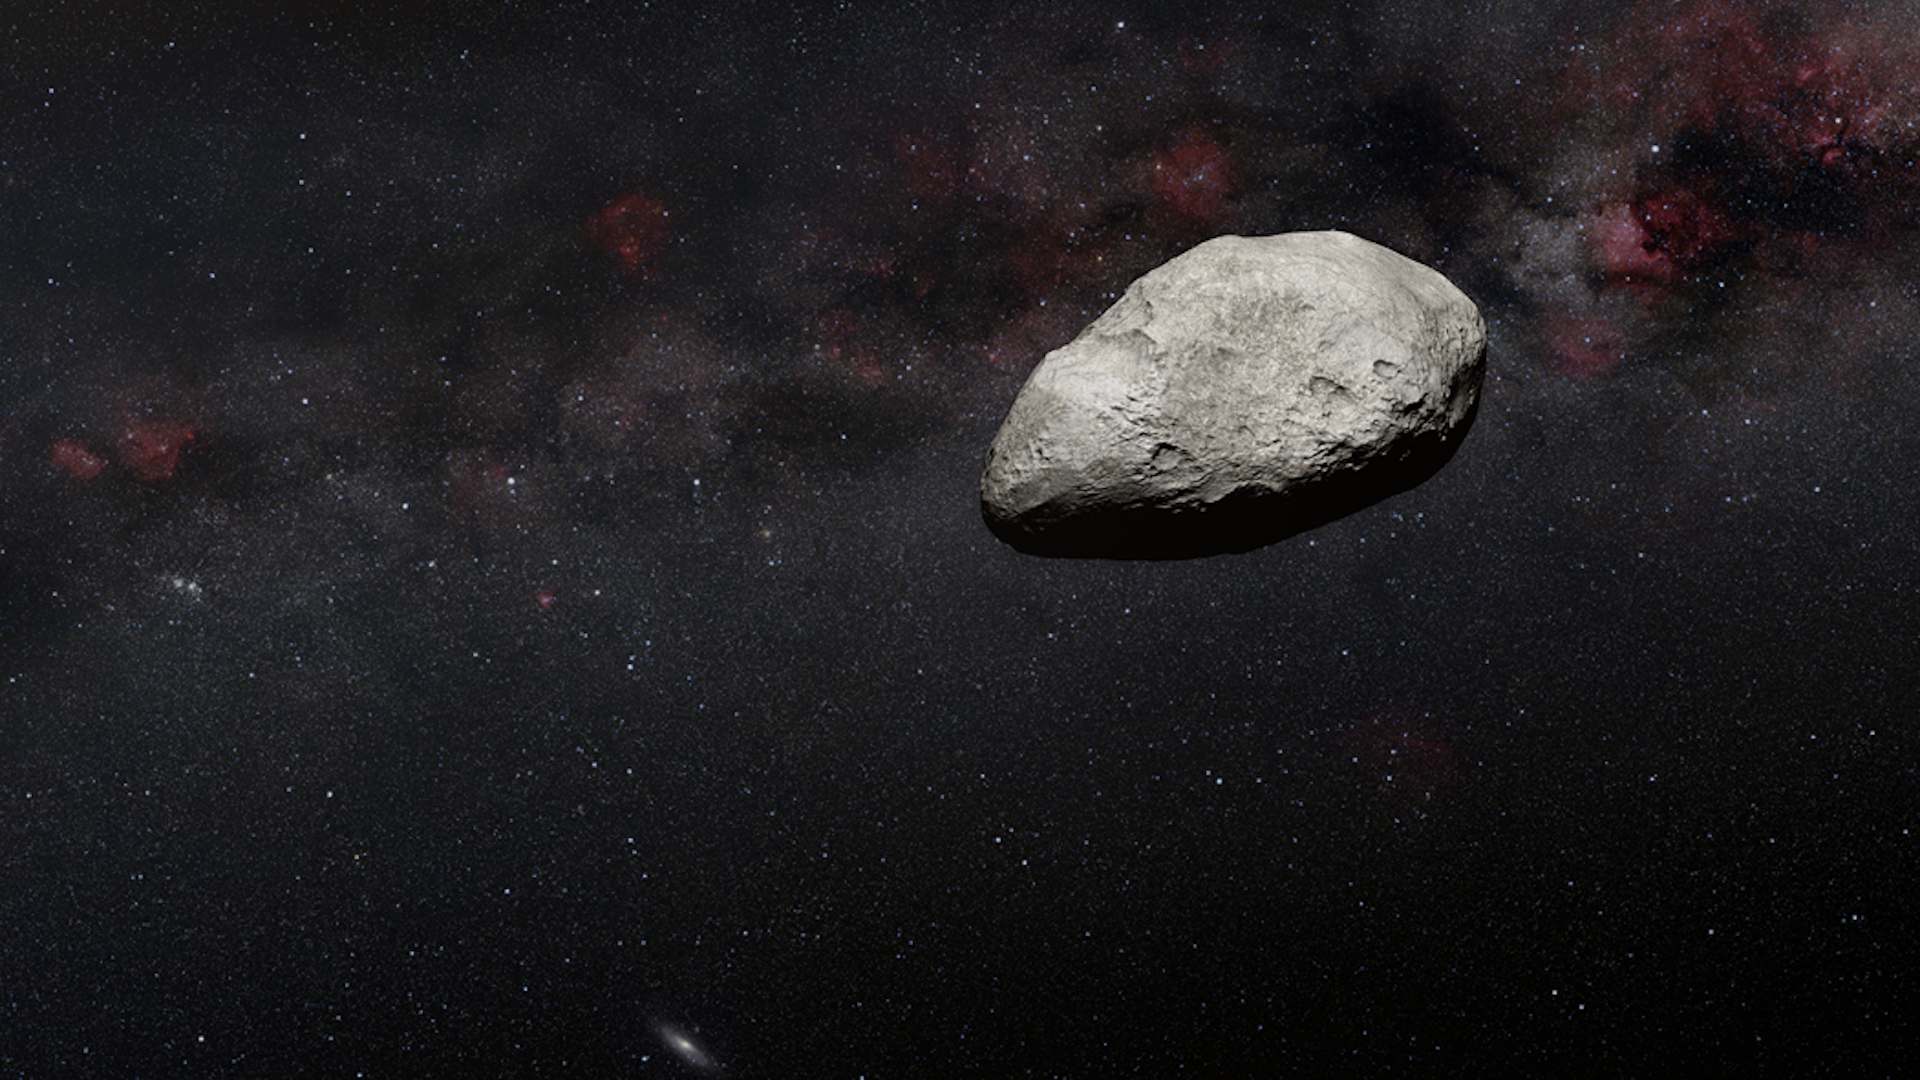 Artist's illustration of an asteroid